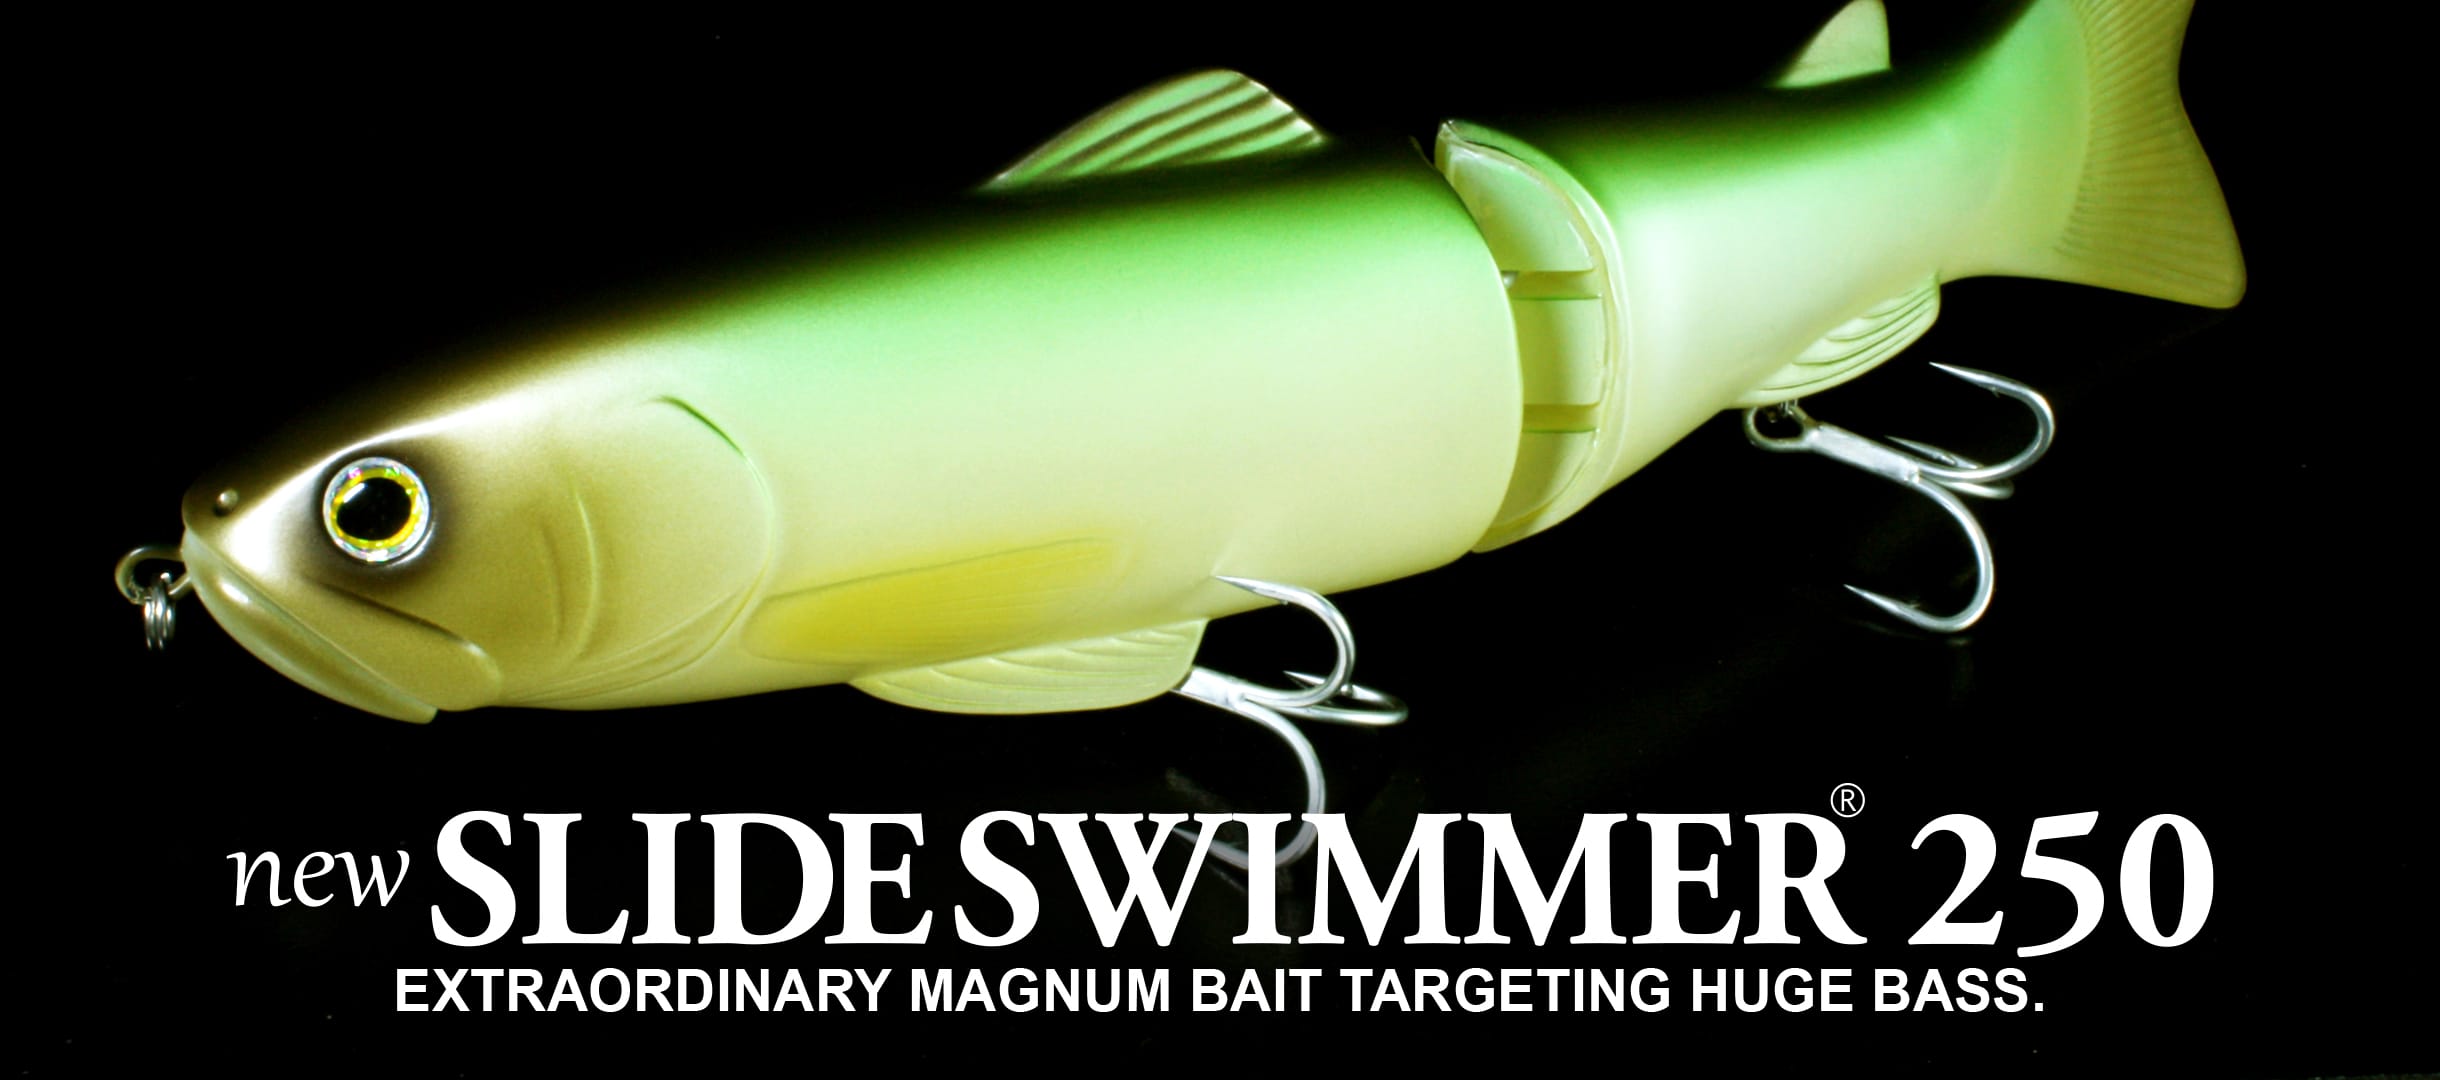 New Slide Swimmer 250 - OPTIMUM BAITS